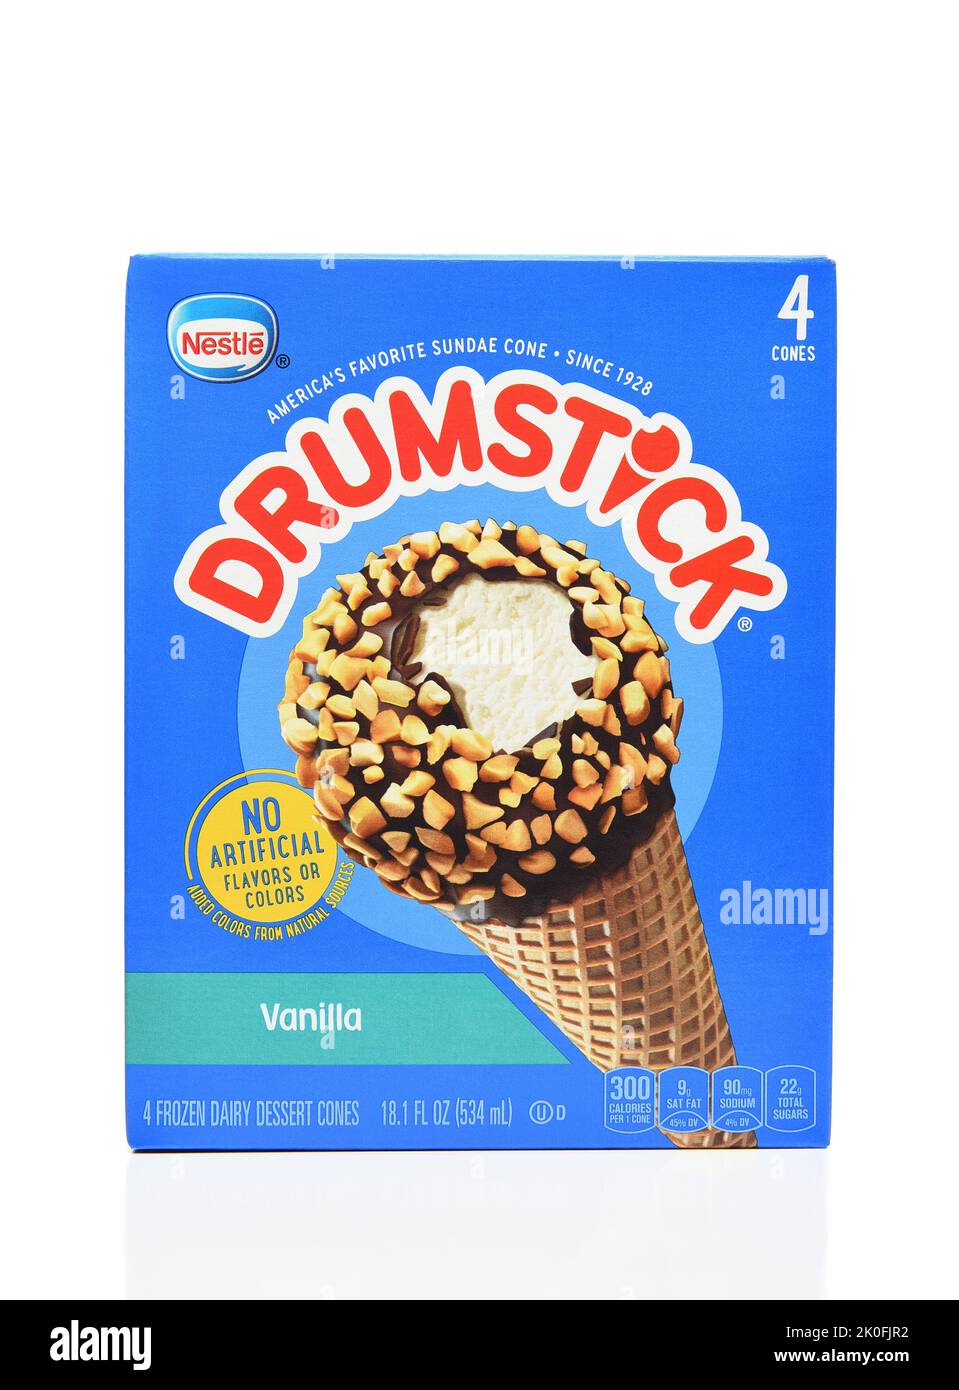 IRVINE, CALIFORNIA - 30 AGO 2022: Una confezione da 4 pezzi del marchio originale Vanilla Drumstick Ice Cream novità da Nestle. Foto Stock